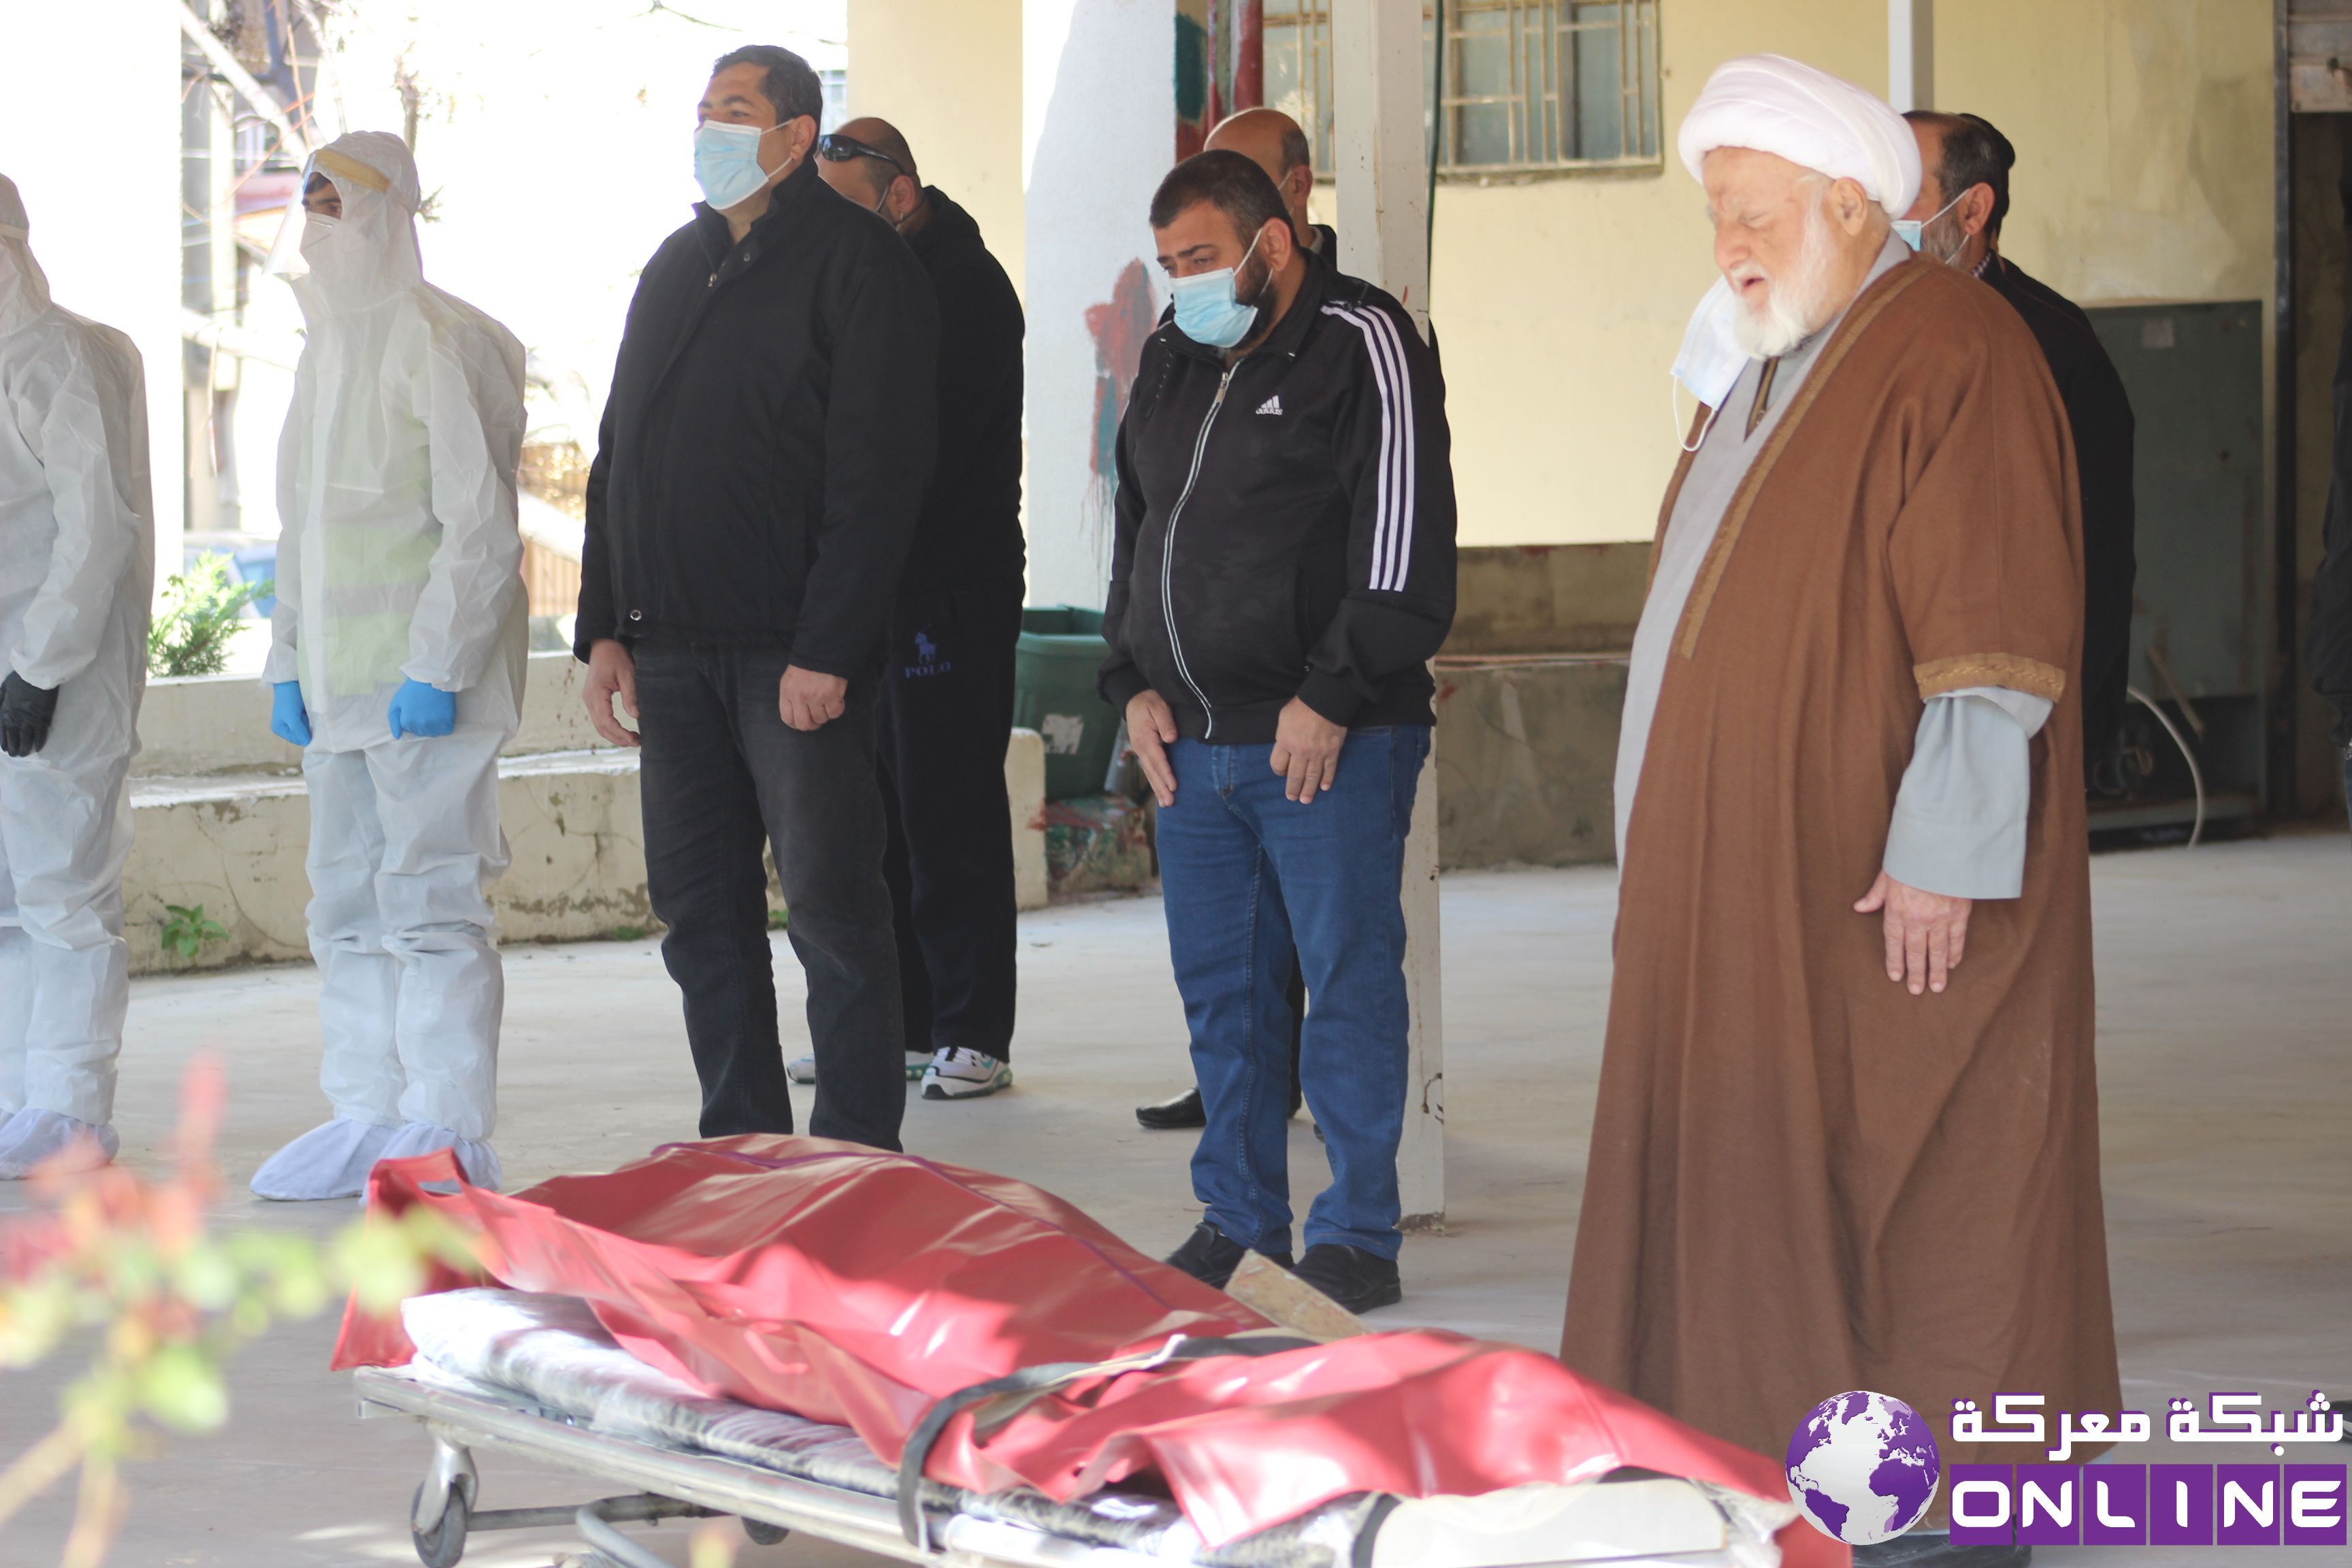 بلدة معركة .. جمعية الرسالة للإسعاف الصحي تتولّى دفن أحد المتوفّين بـ”كورونا